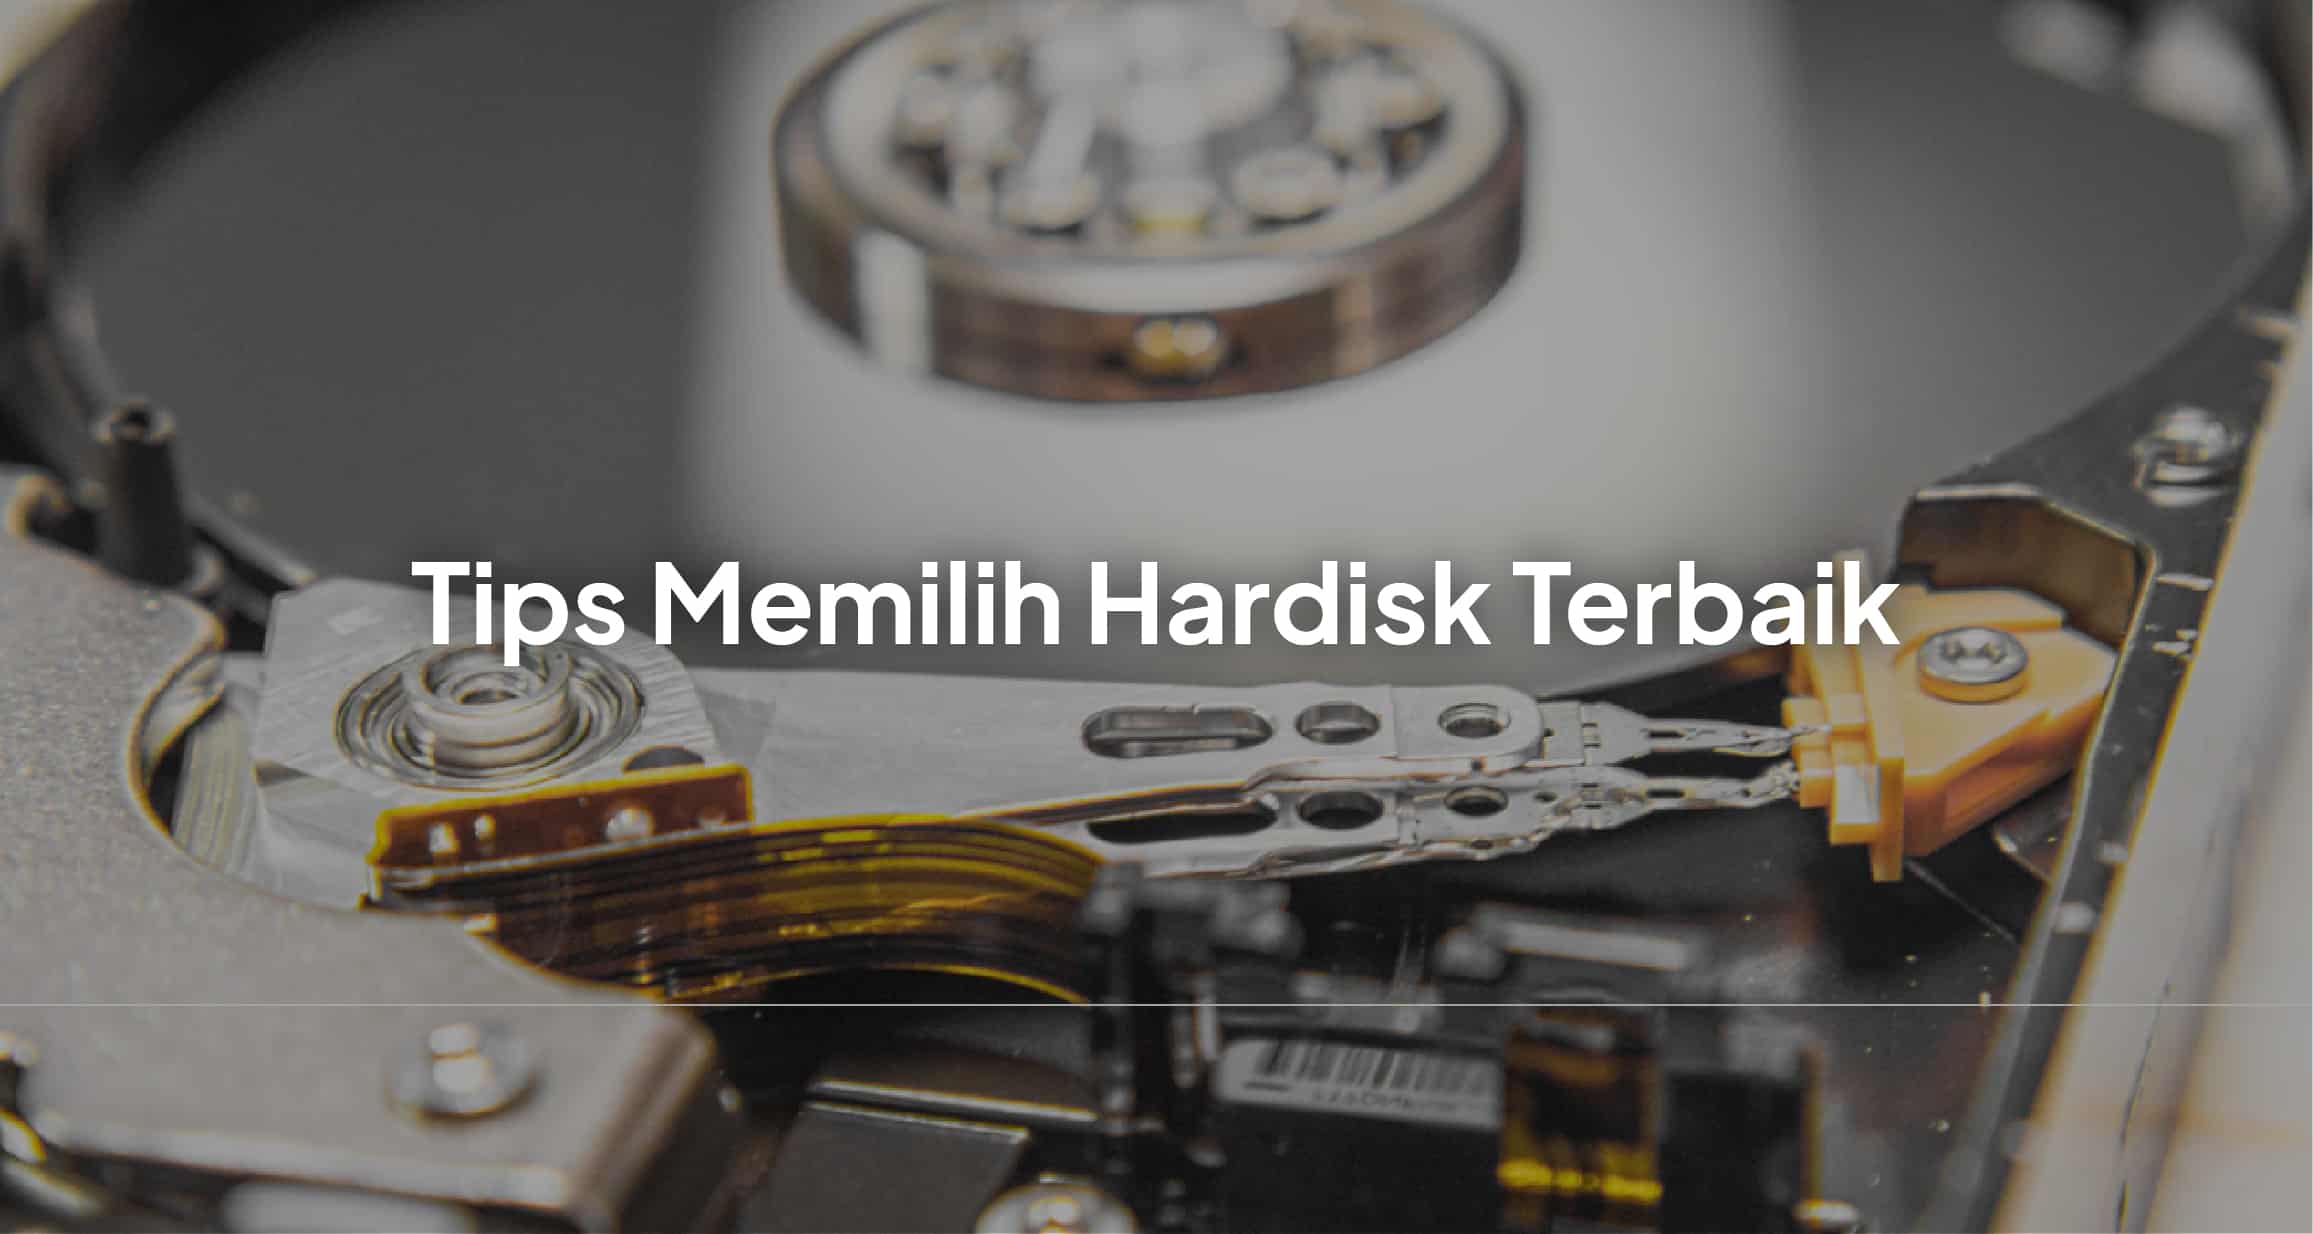 Hardisk Seagate Terbaik - Tips Dalam Memilih Hardisk